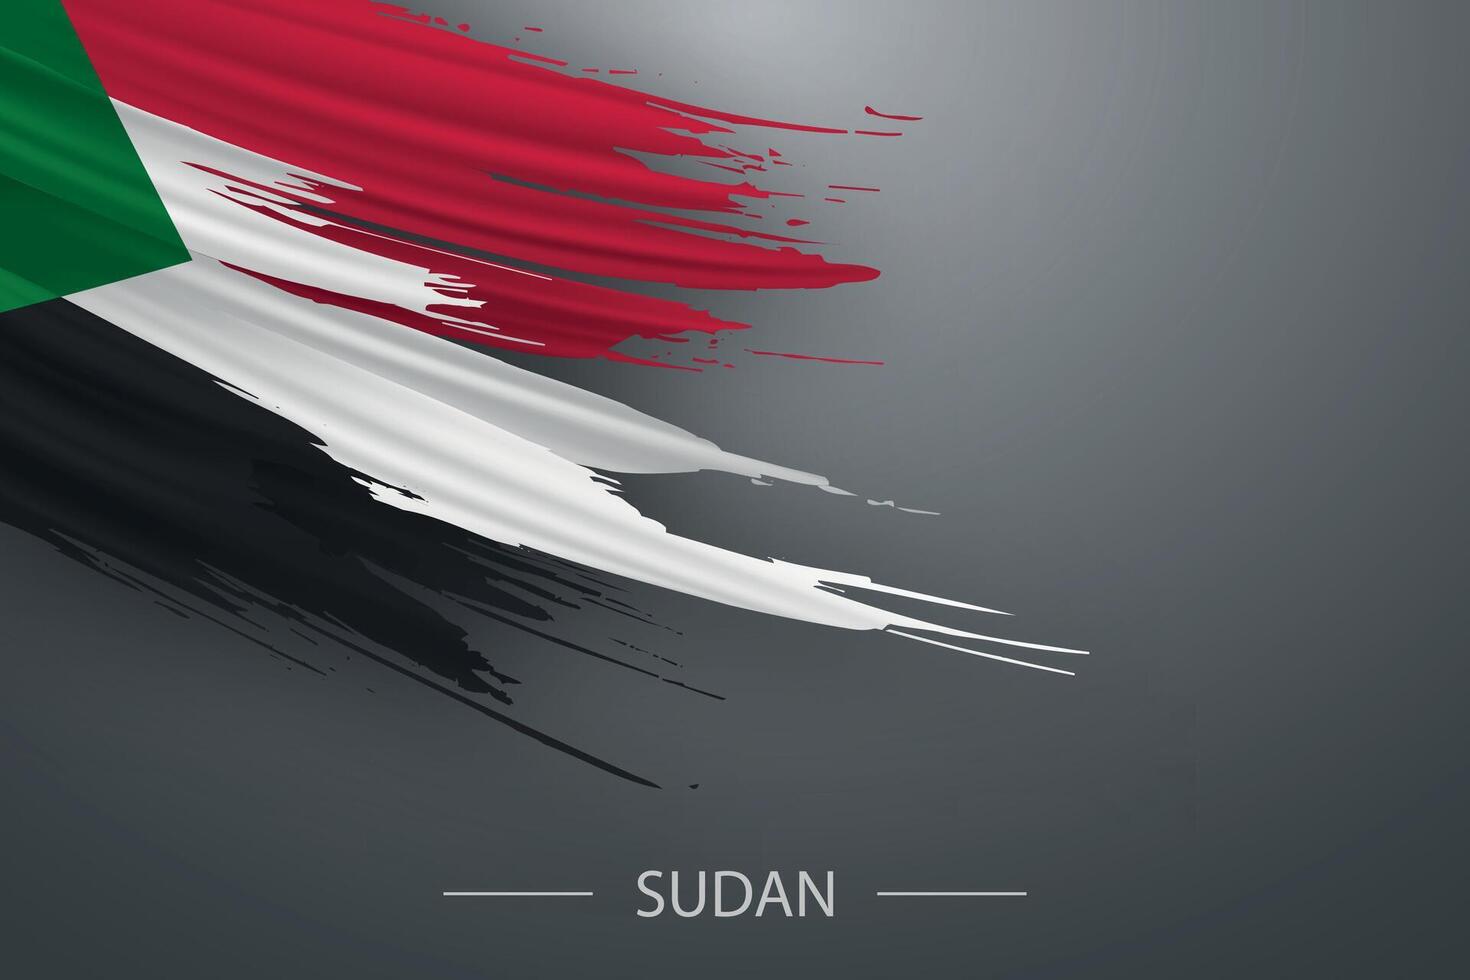 3d grunge brush stroke flag of Sudan vector